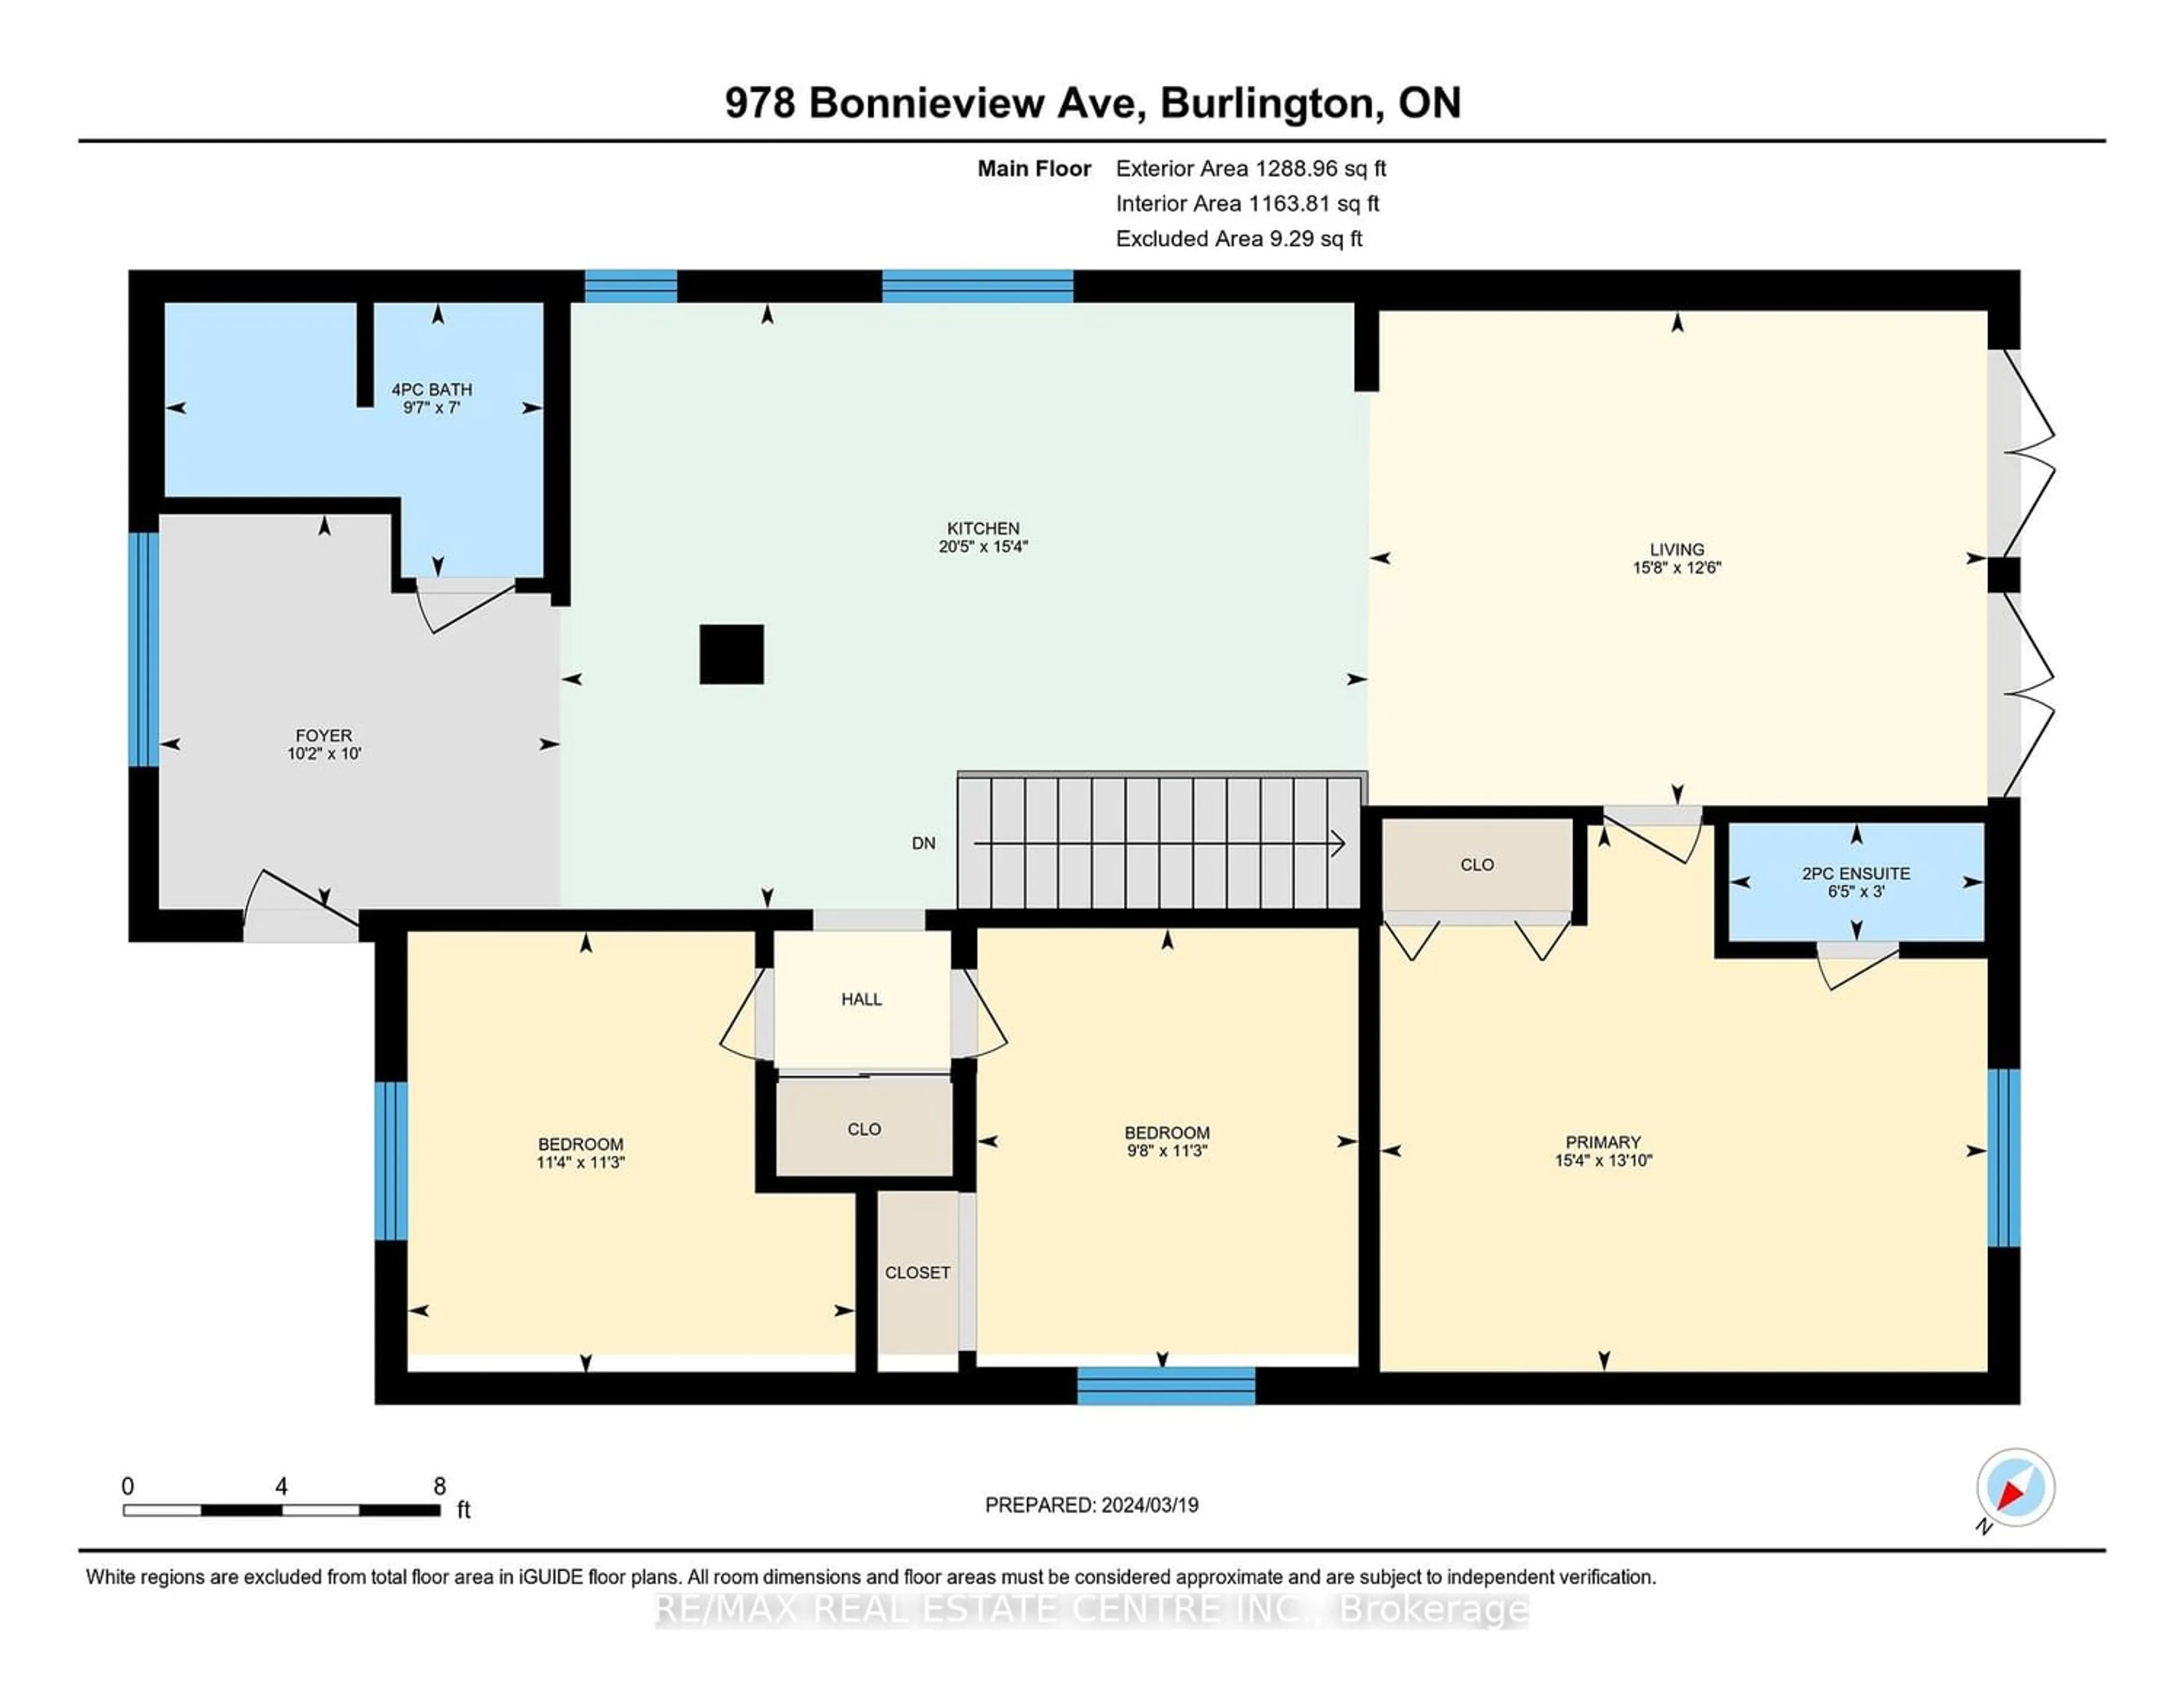 Floor plan for 978 Bonnieview Ave, Burlington Ontario L7T 1T5